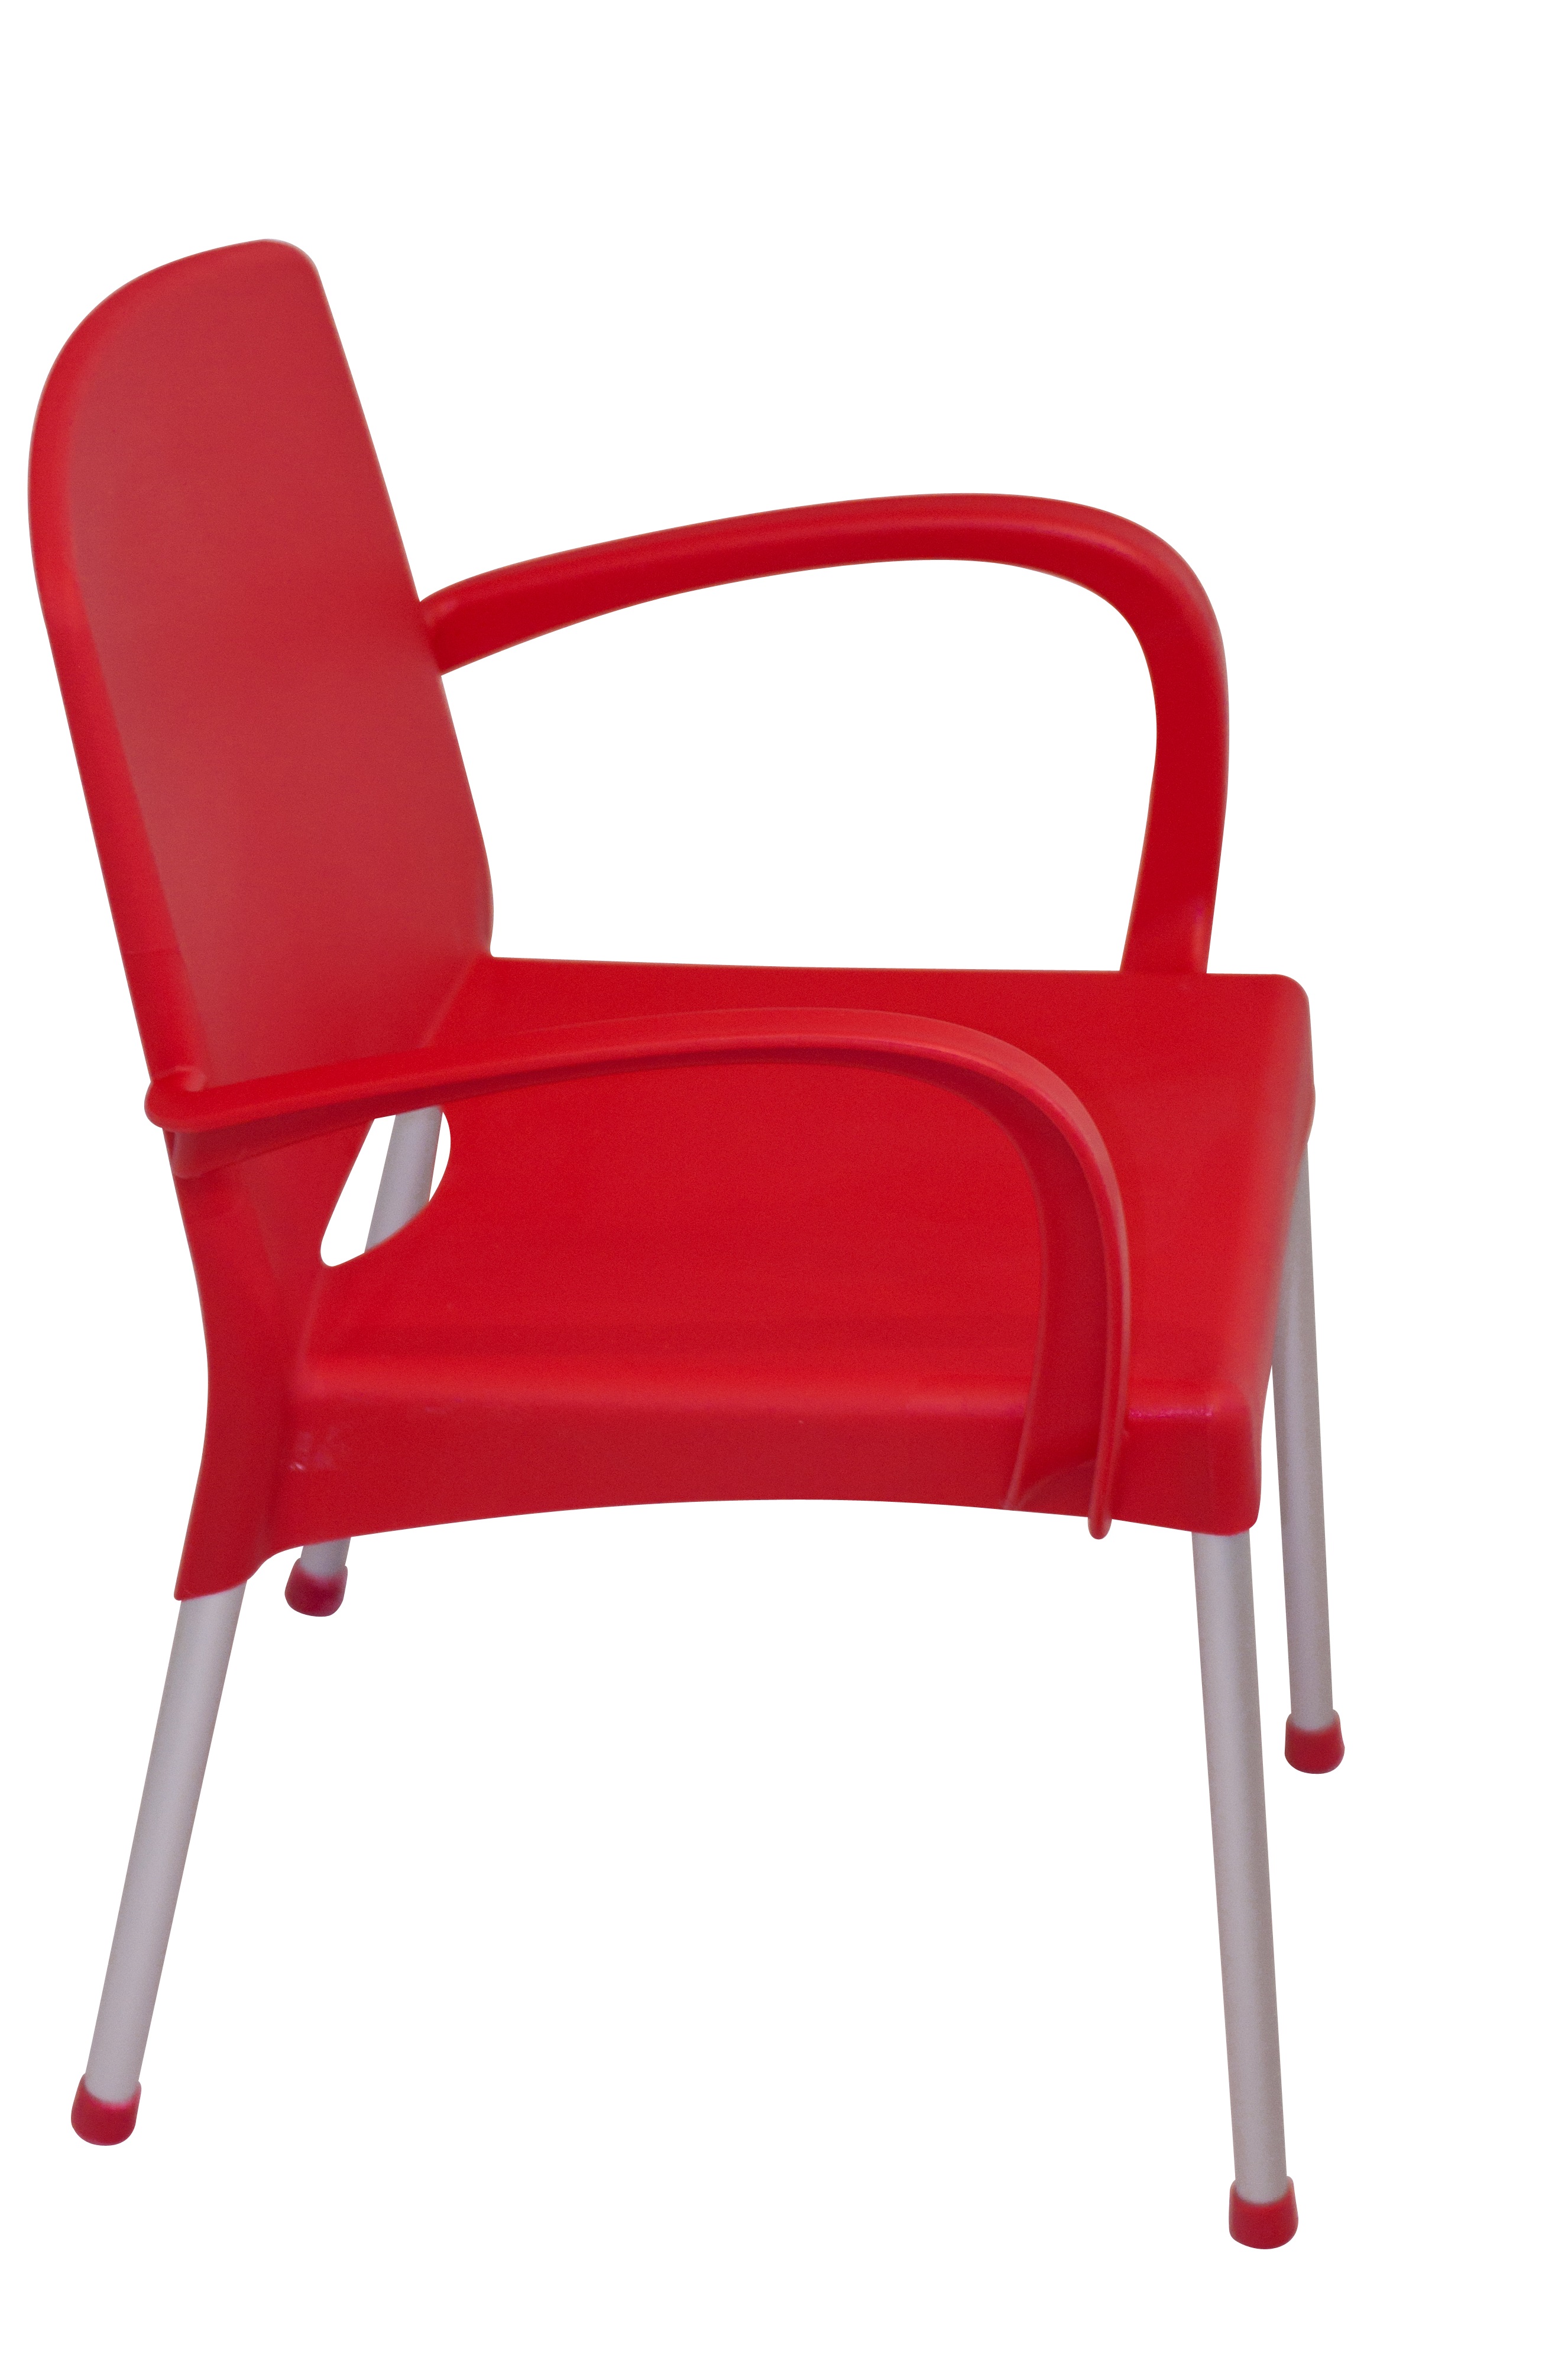 Glen стул красный (112846)